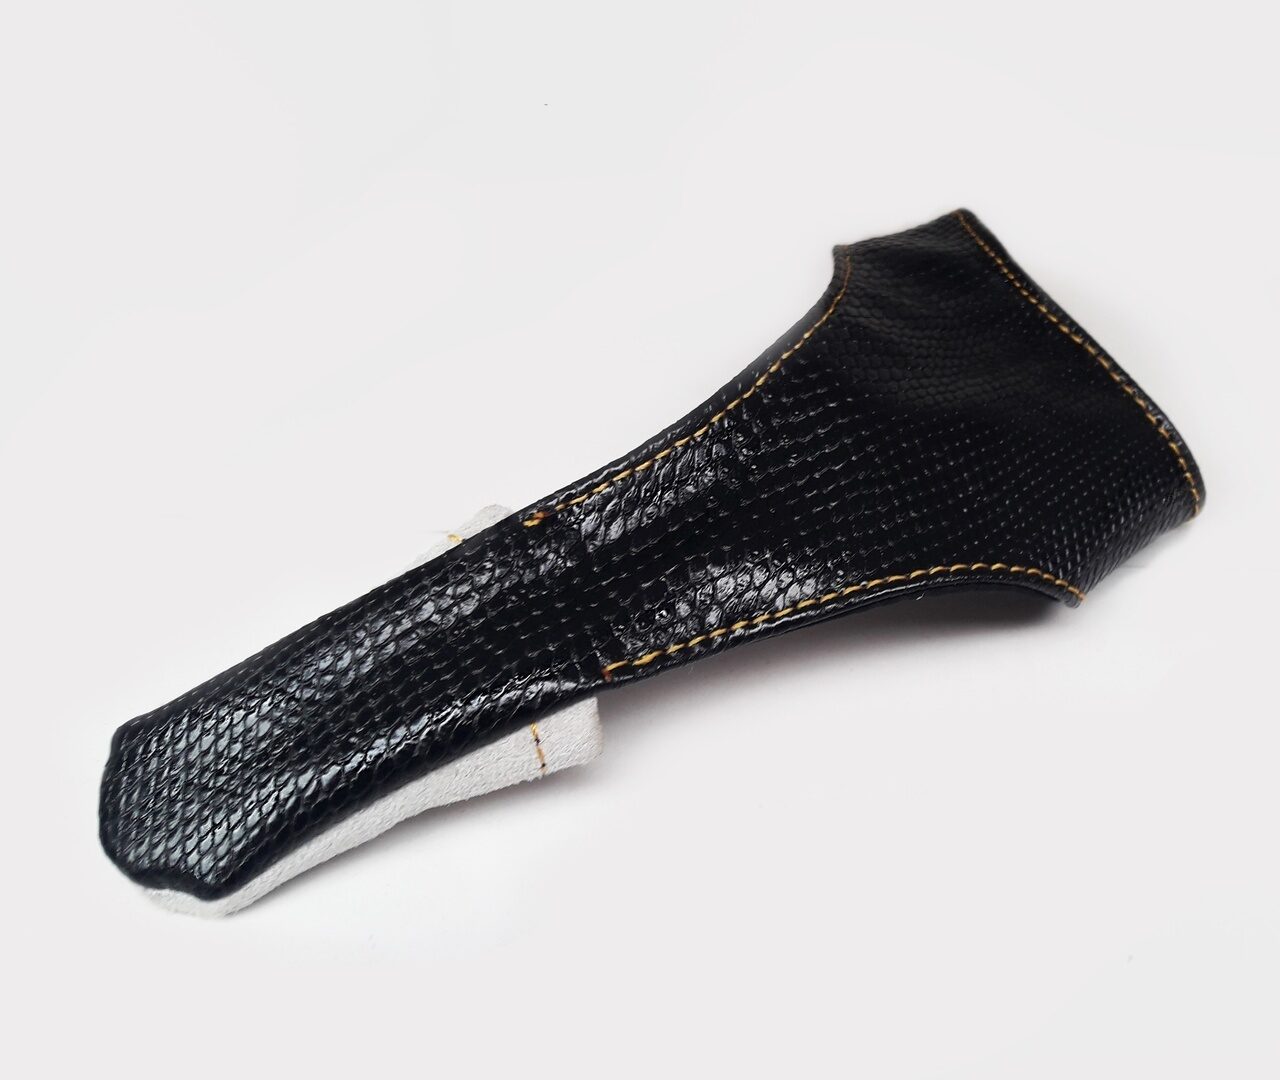 Напальчник (перчатка) для заброса Змея Trubchevskii Baits - Finger Сot (Glove) Сasting Snake, Размер Большой